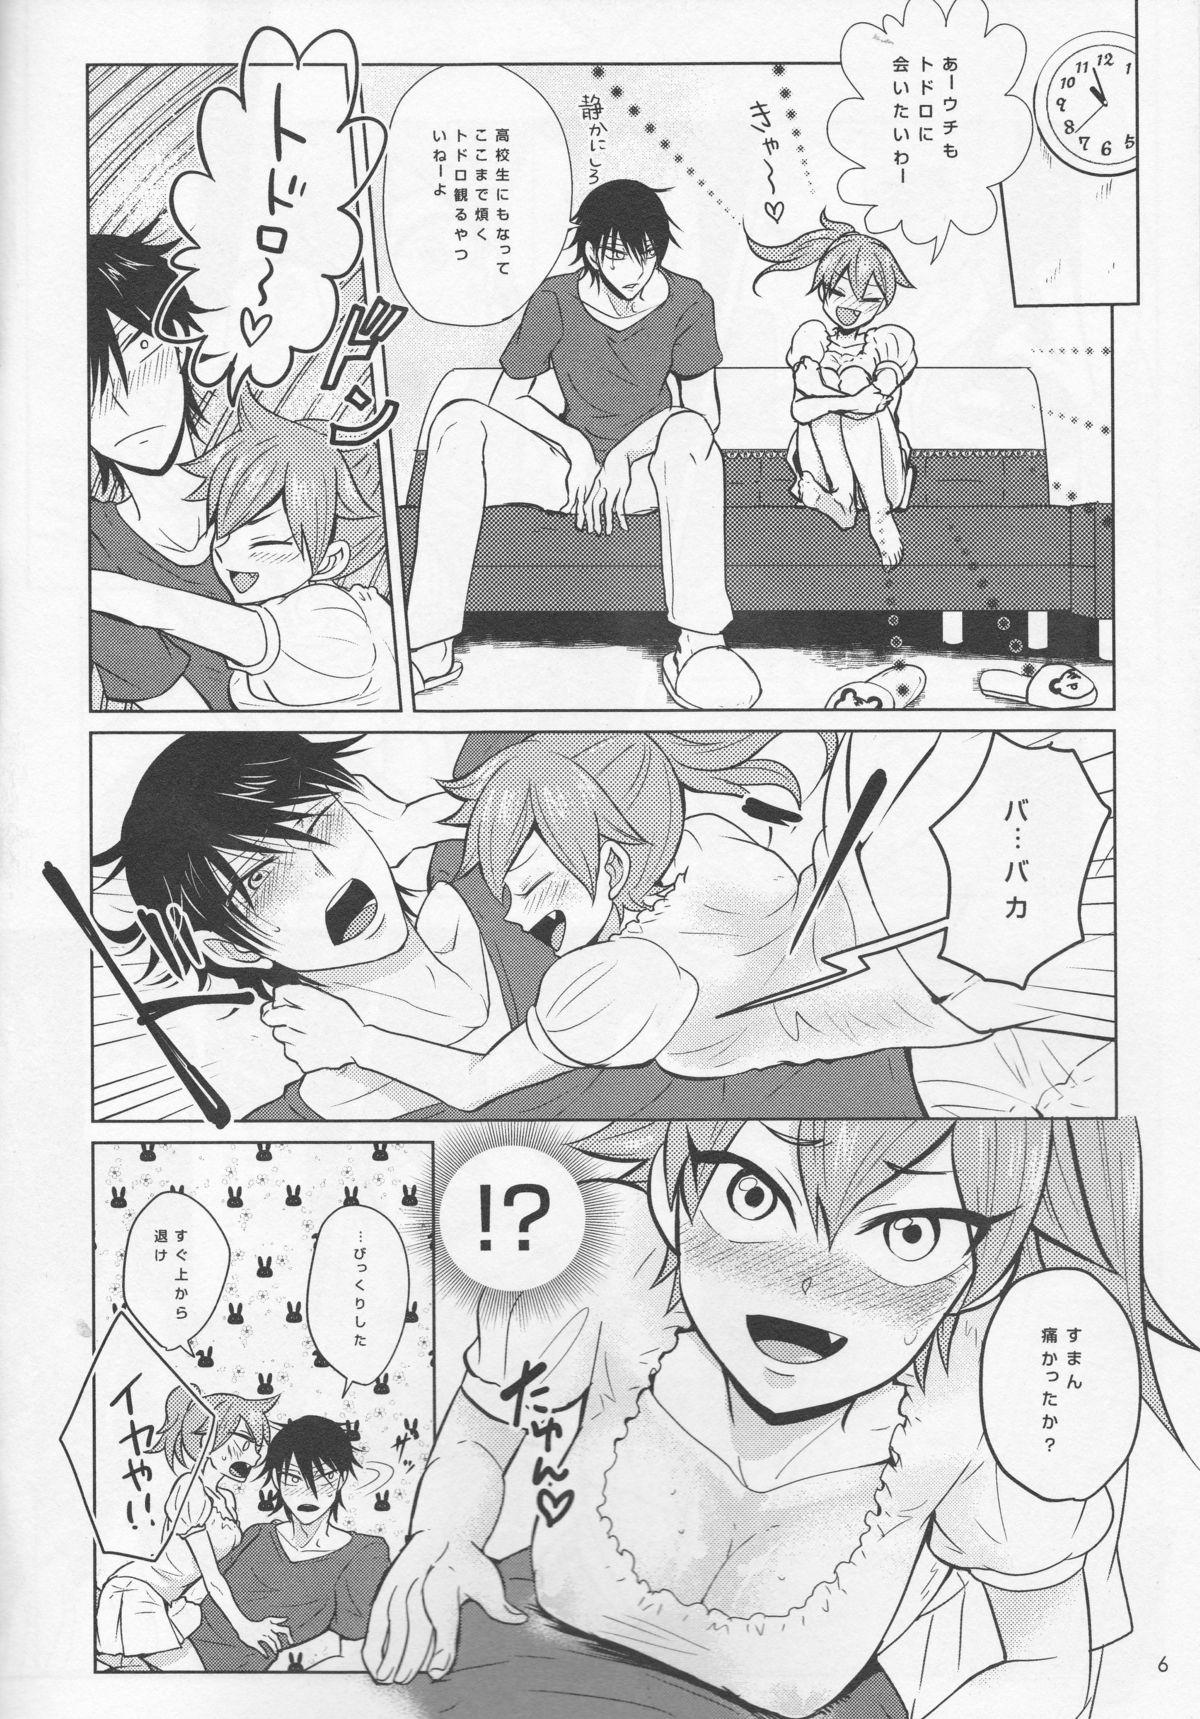 Hot Women Fucking boy meets OPI - Yowamushi pedal Sensual - Page 6